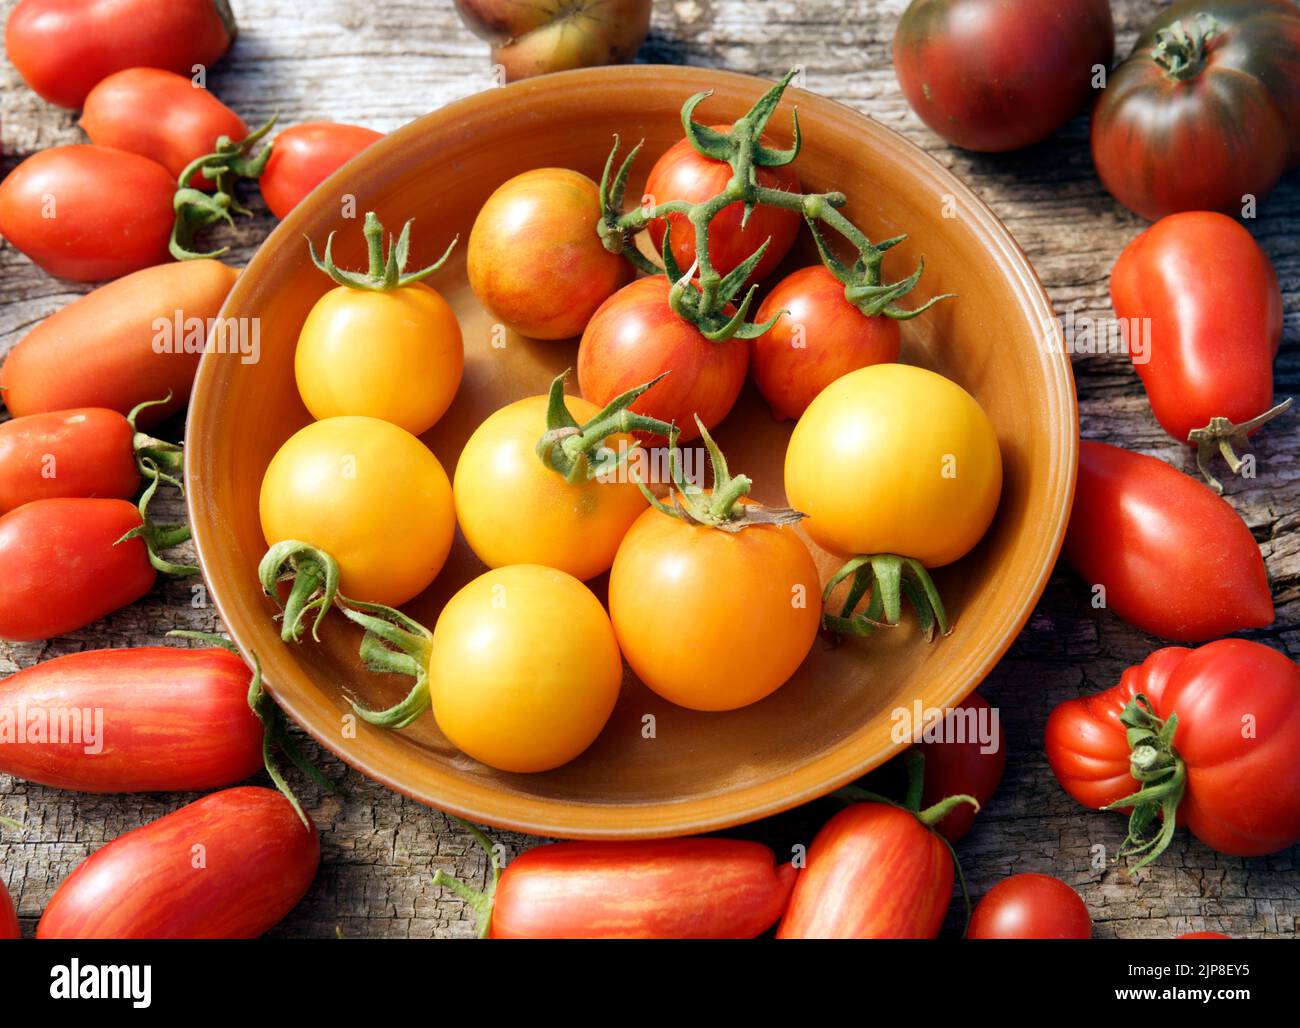 Vegetable garden tomatoes, different varieties Stock Photo